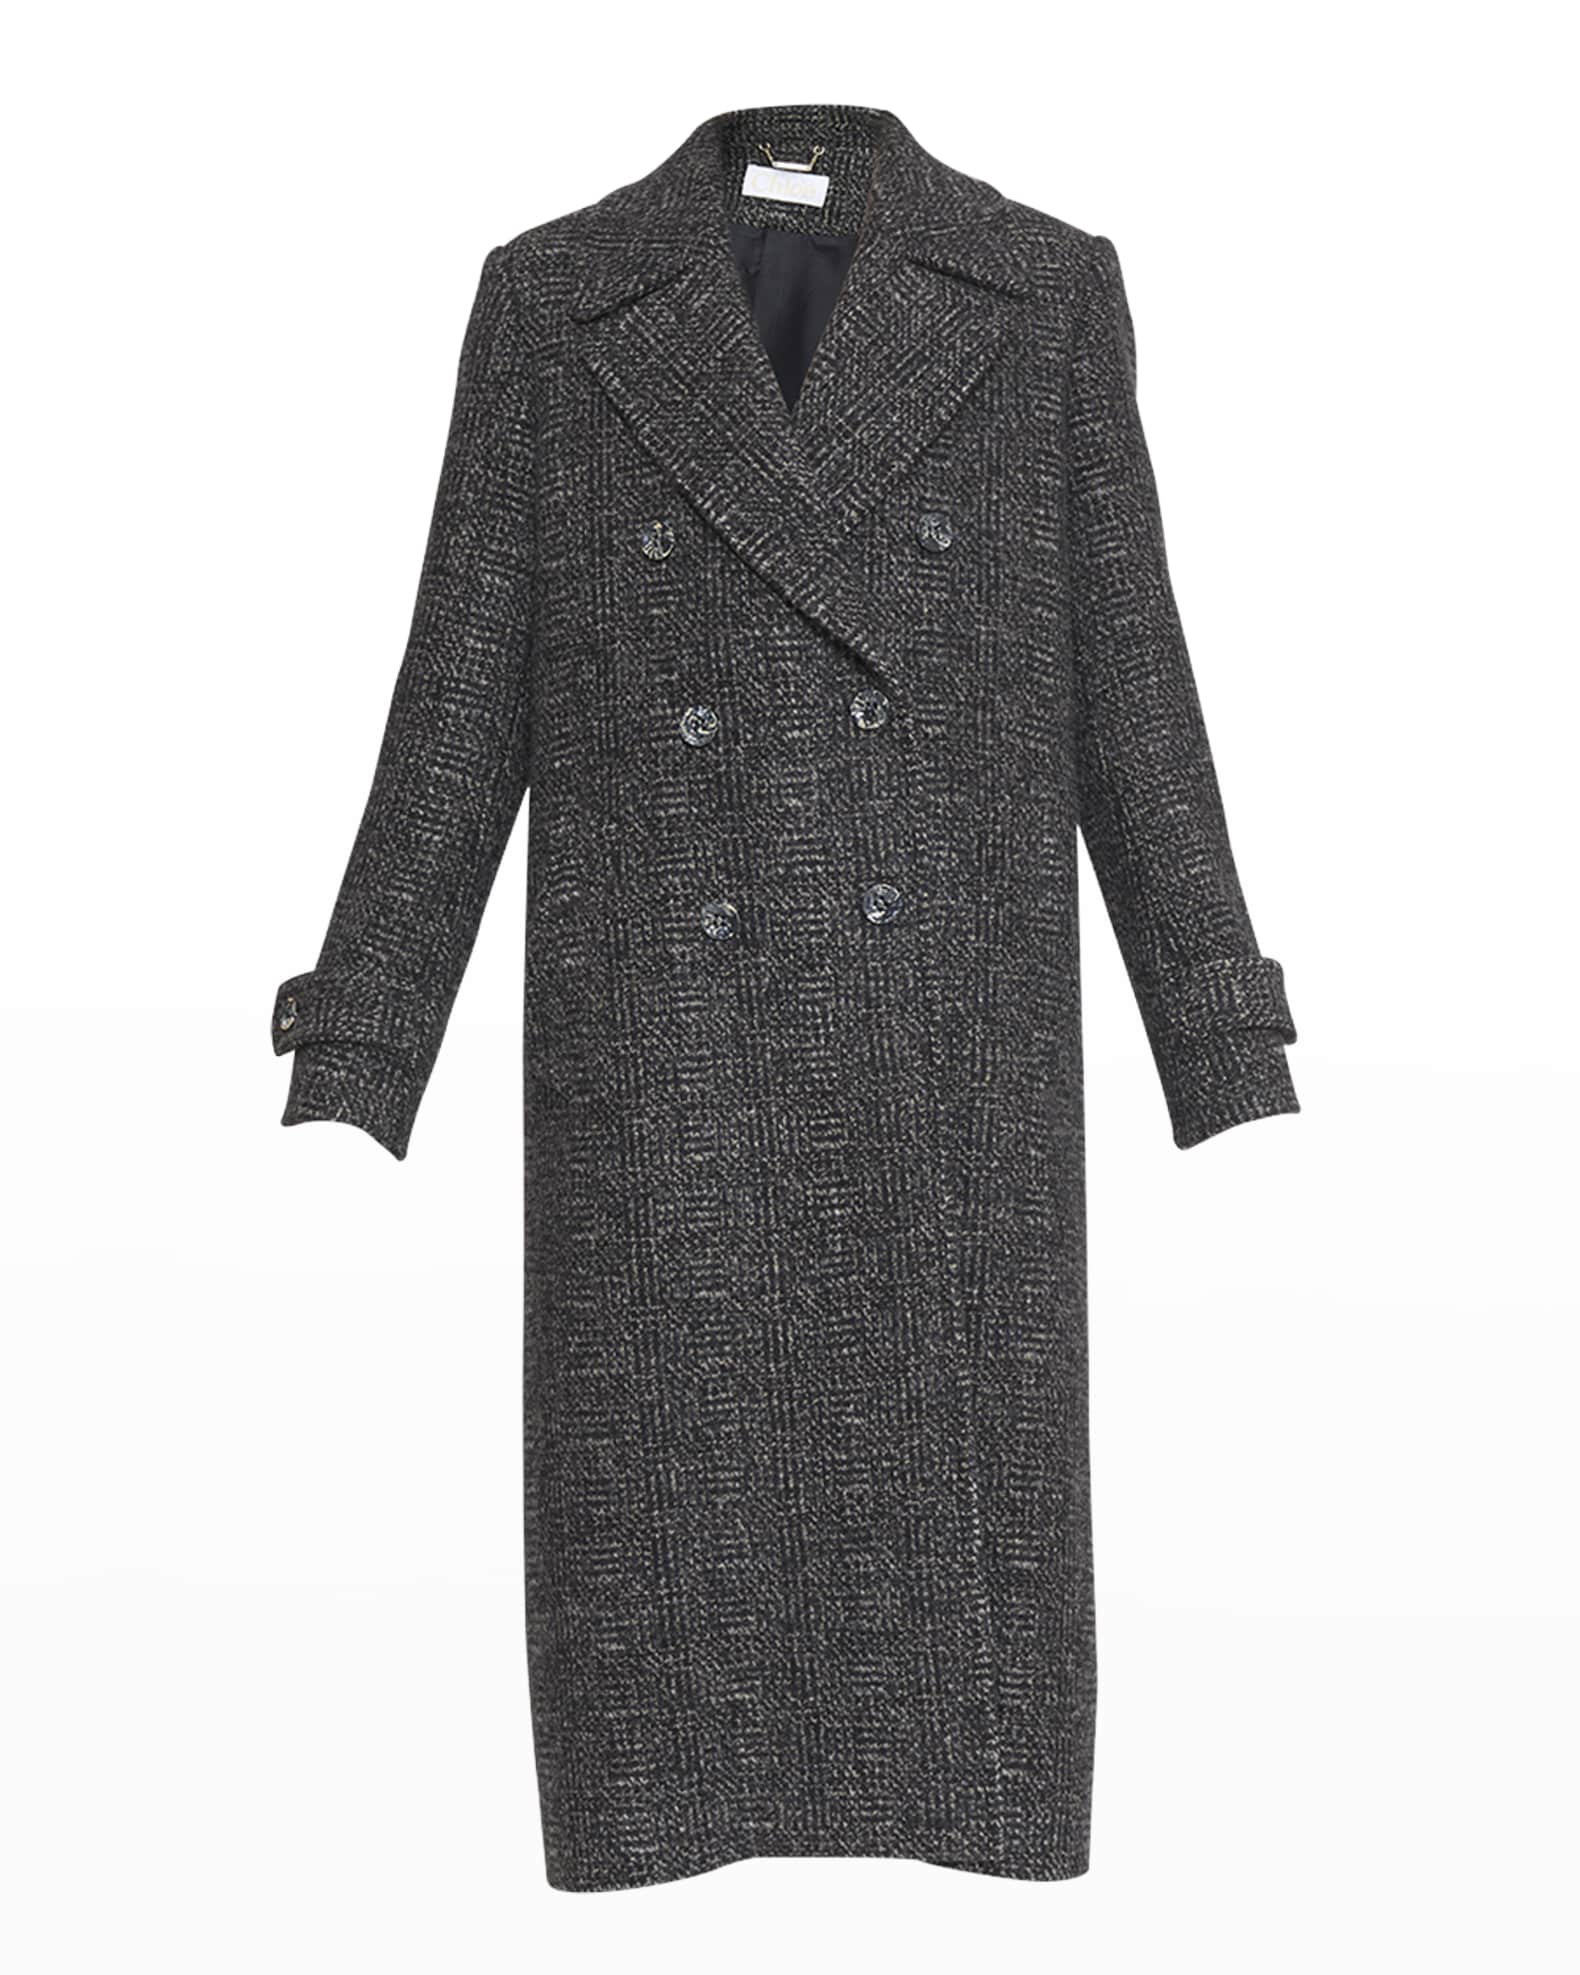 Chloe Lower Impact Wool Alpaca Tweed Coat | Neiman Marcus